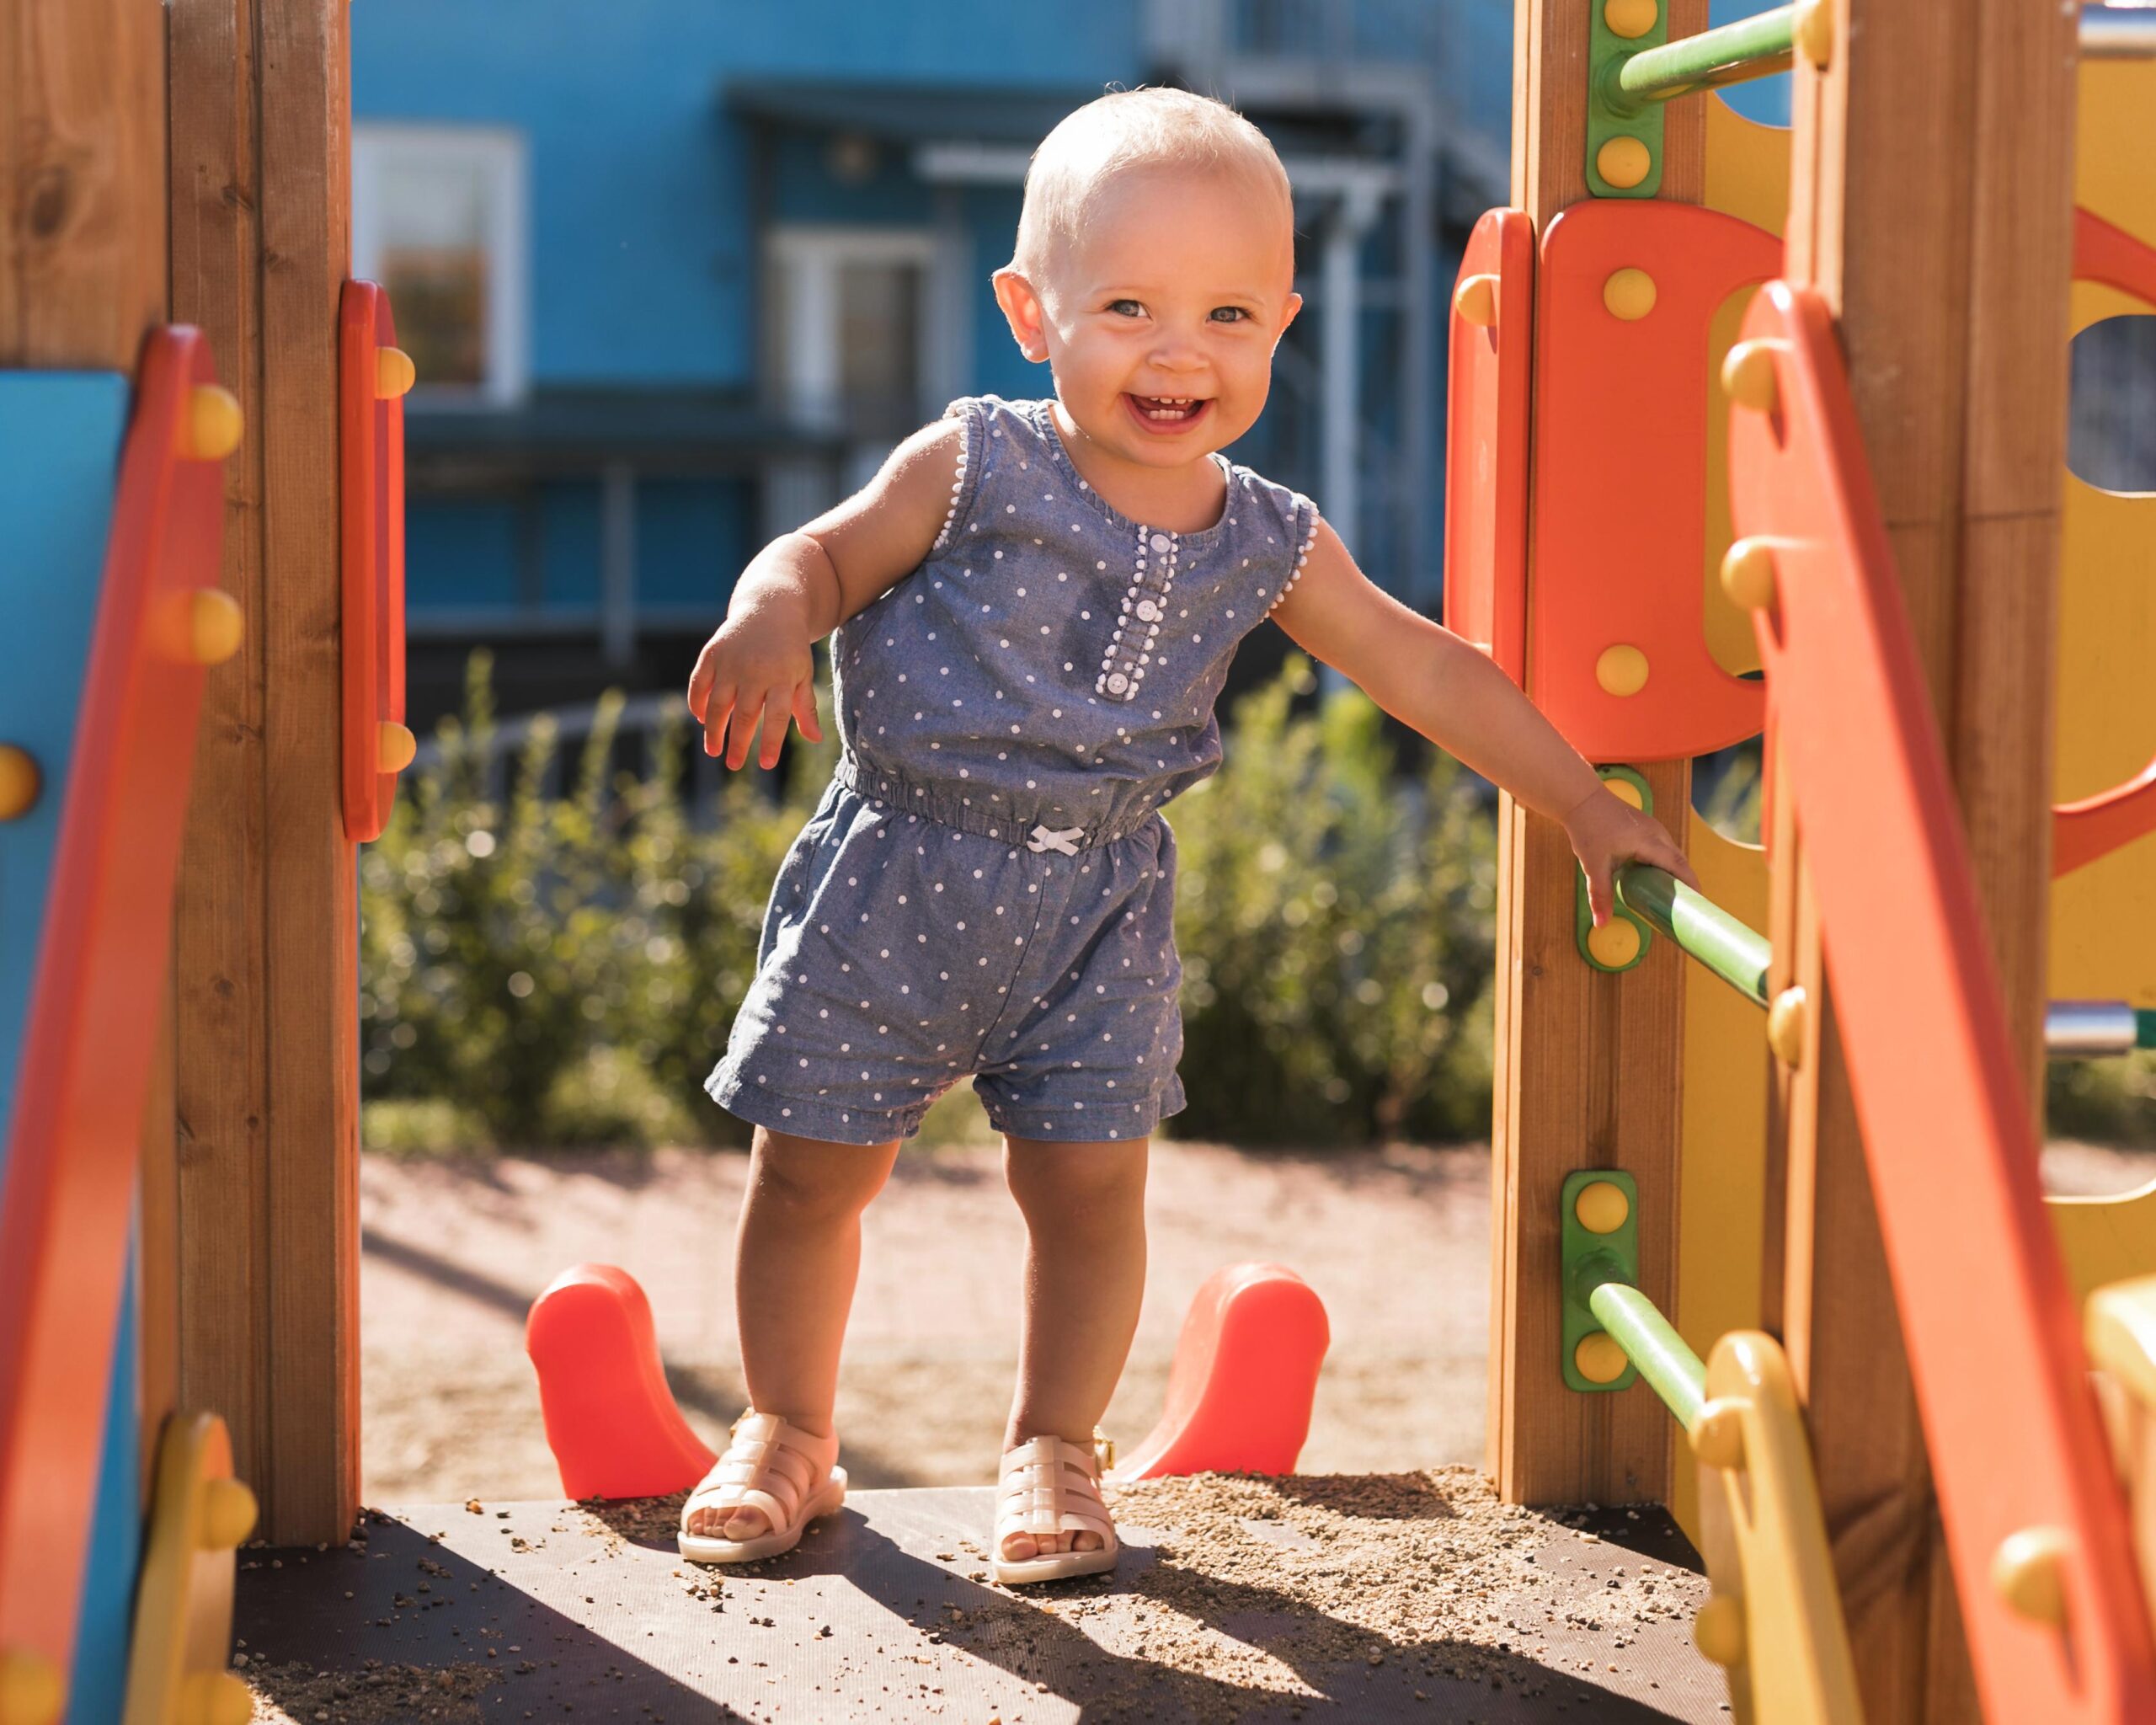 Playground para bebê: 5 dicas de como escolher um seguro